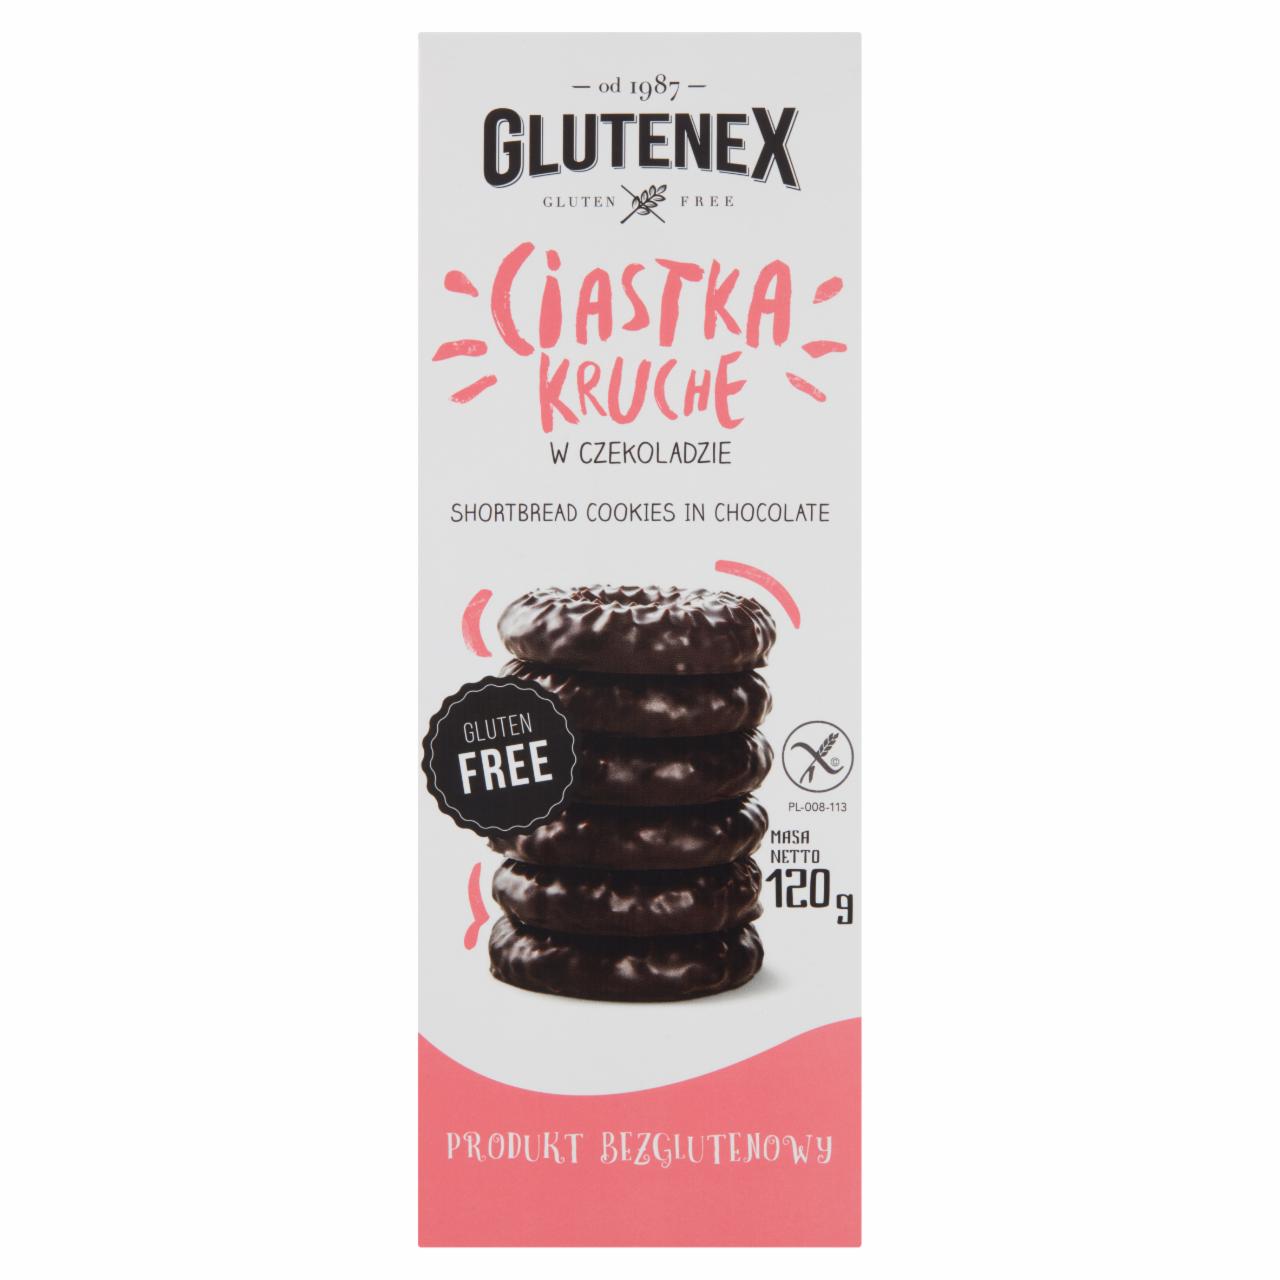 Zdjęcia - Glutenex Ciastka kruche w czekoladzie 120 g